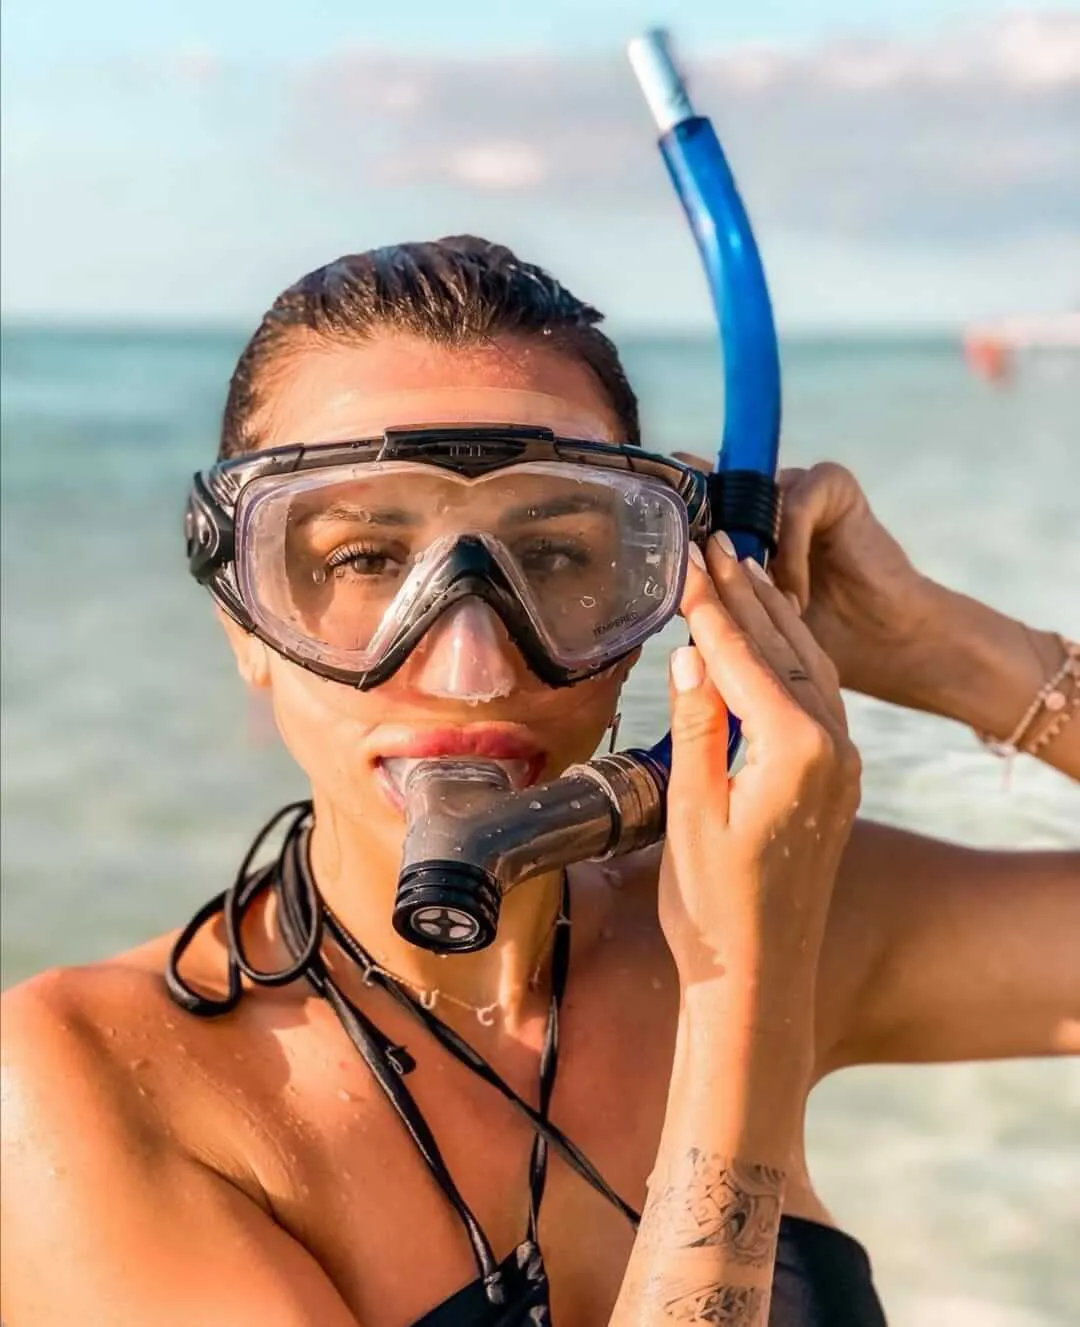 Woman adjusting her snorkeling mask